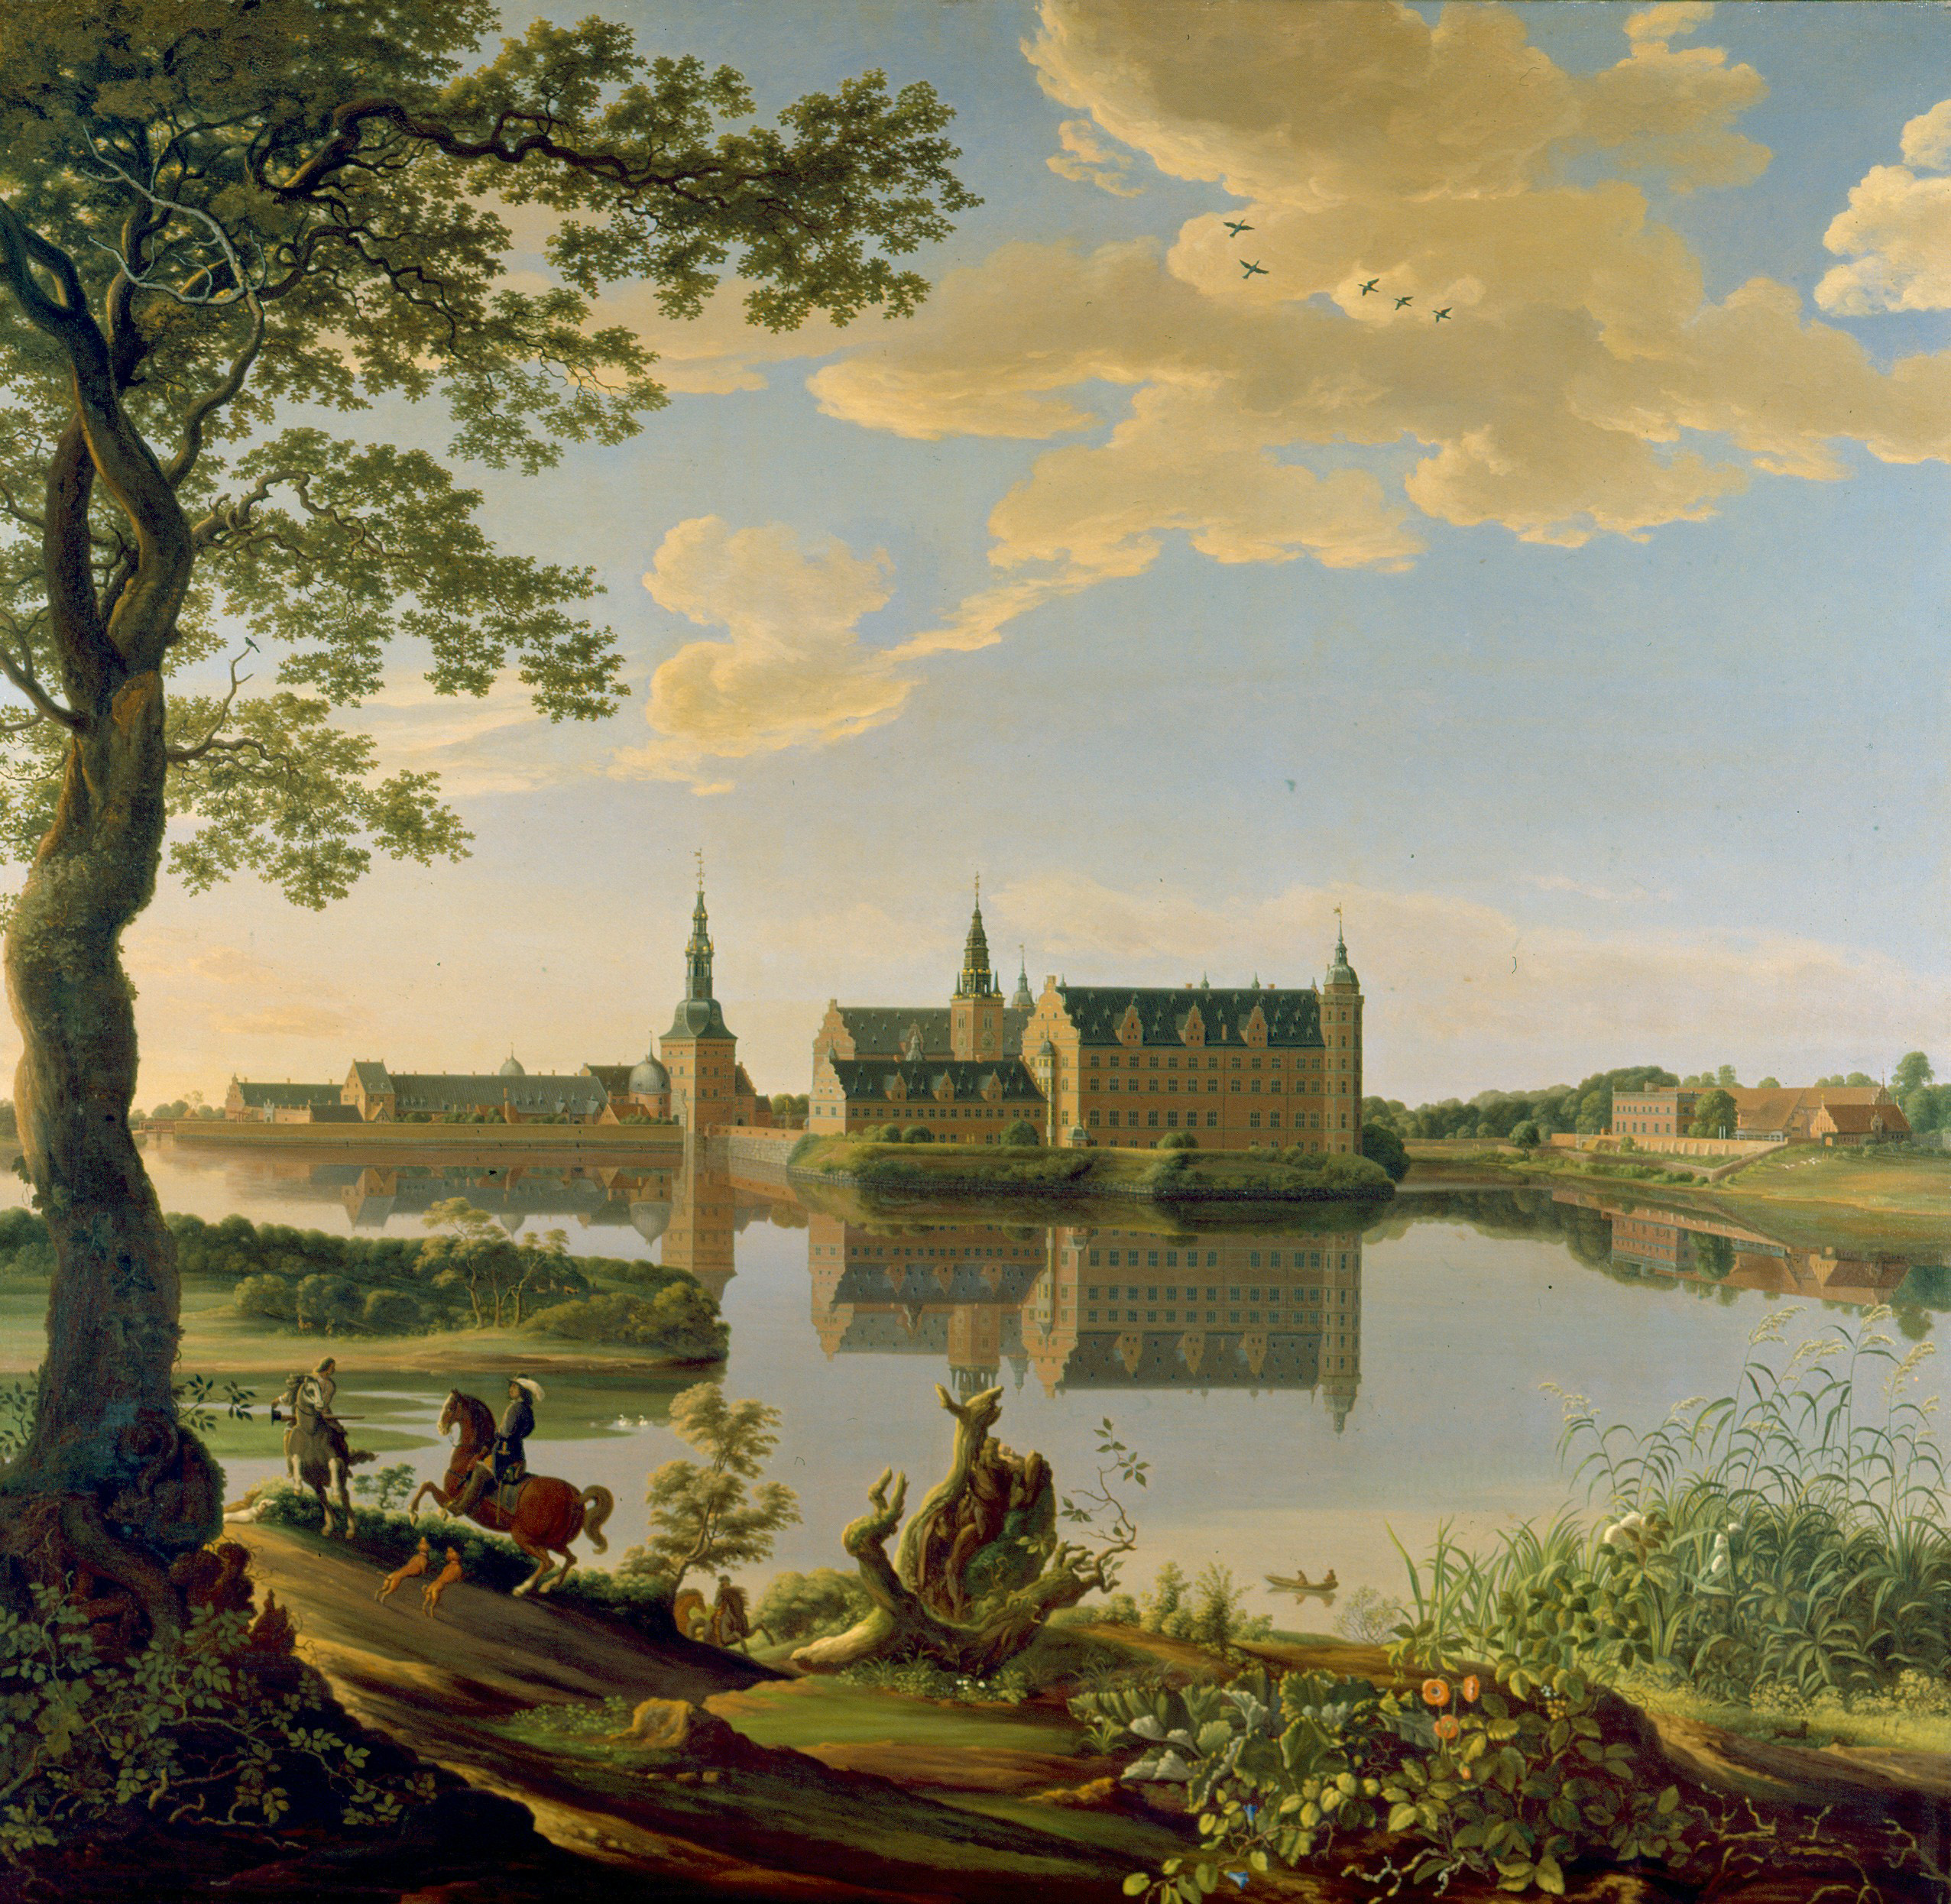 Frederiksborg by Baratta 1652